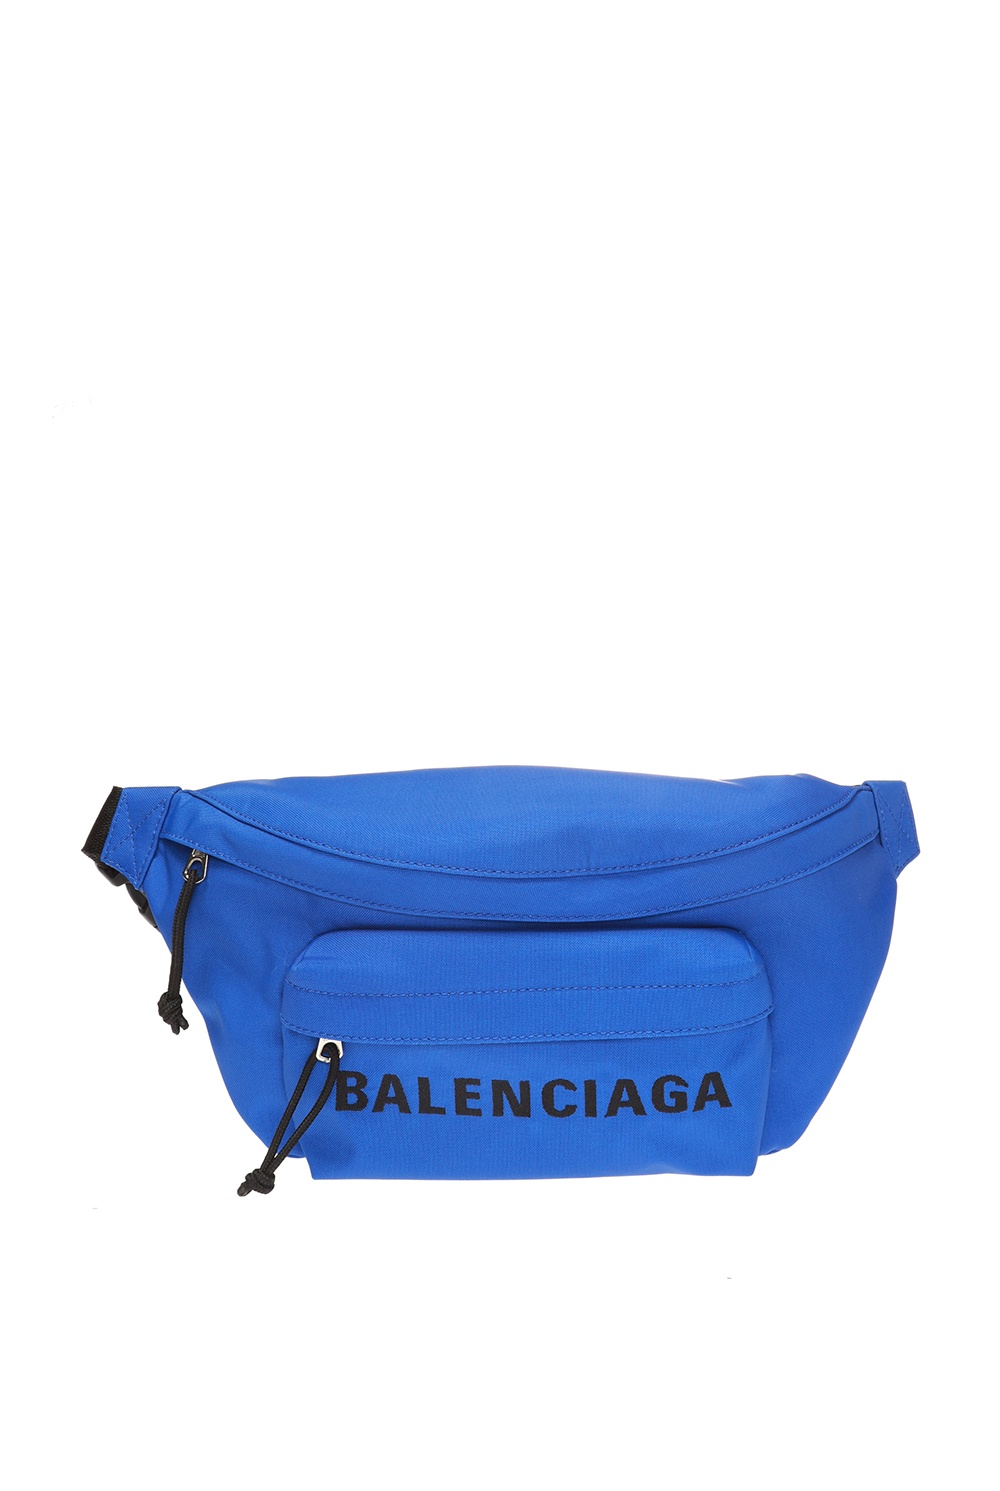 Balenciaga 'Wheel' belt bag | Men's Bags | IetpShops